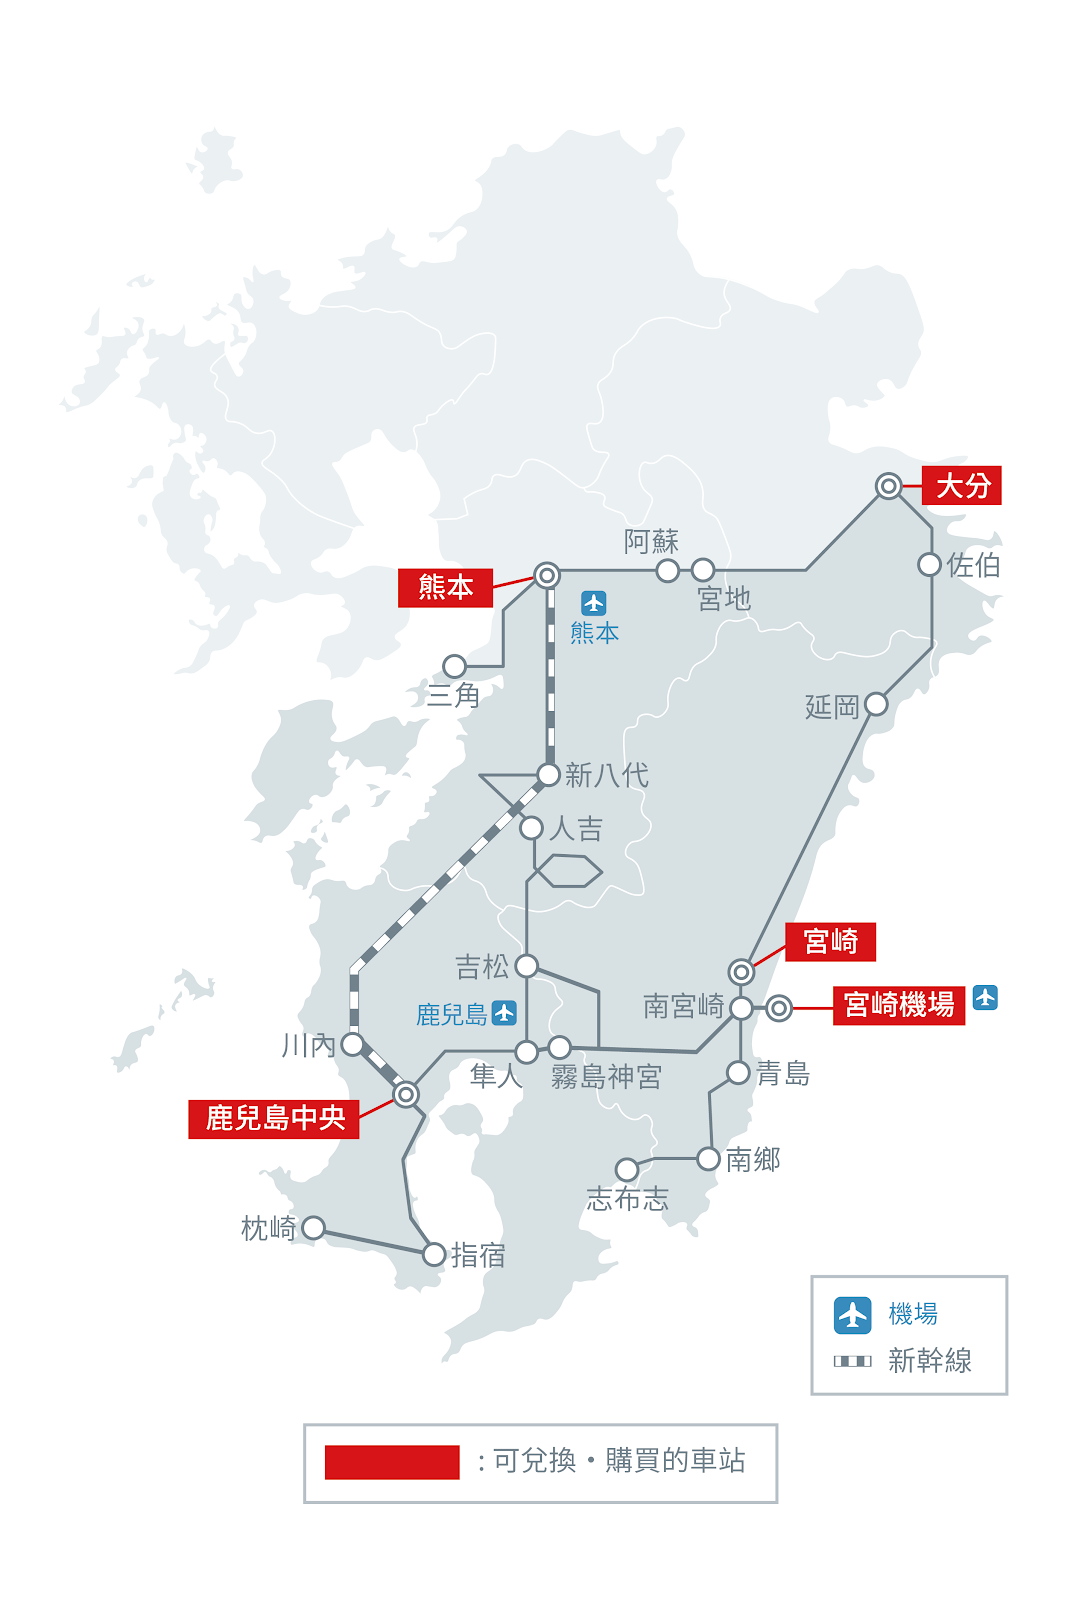 九州-交通-JR-火車-鐵路周遊券-JR三日券Pass-JR五日券Pass-JR北九州Pass-JR南九州Pass-JR全九州Pass-Pass-地圖-Map-觀光-特色列車-推薦-自由行-攻略-旅遊-日本-JR-Kyushu-Railway-3-5-Day-Pass-Japan